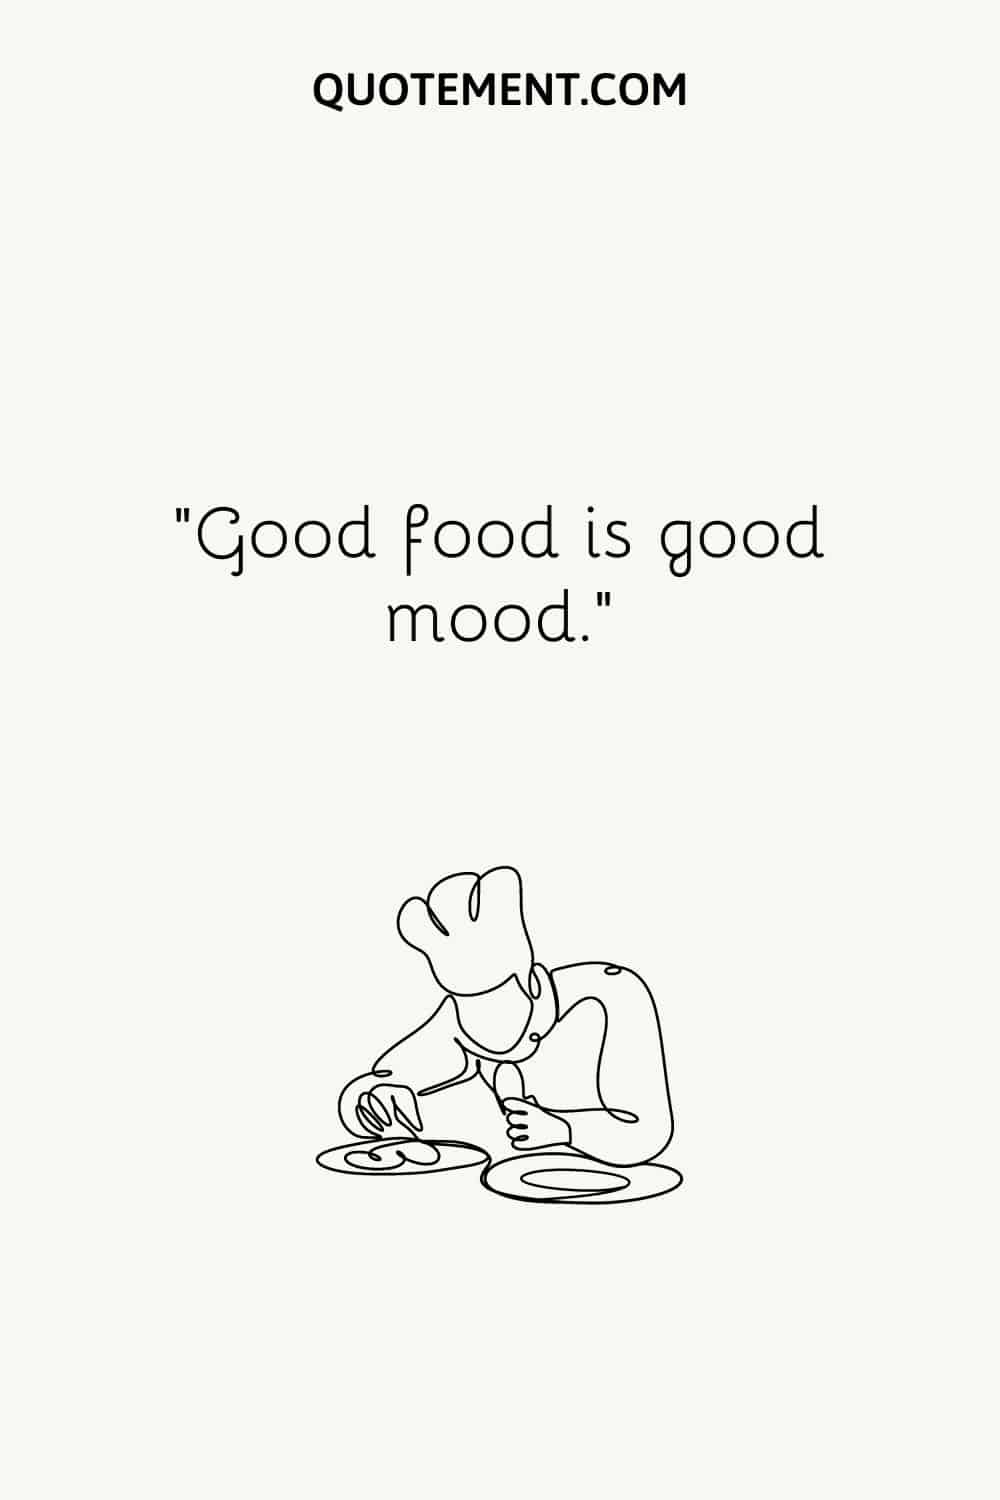 Good food is good mood